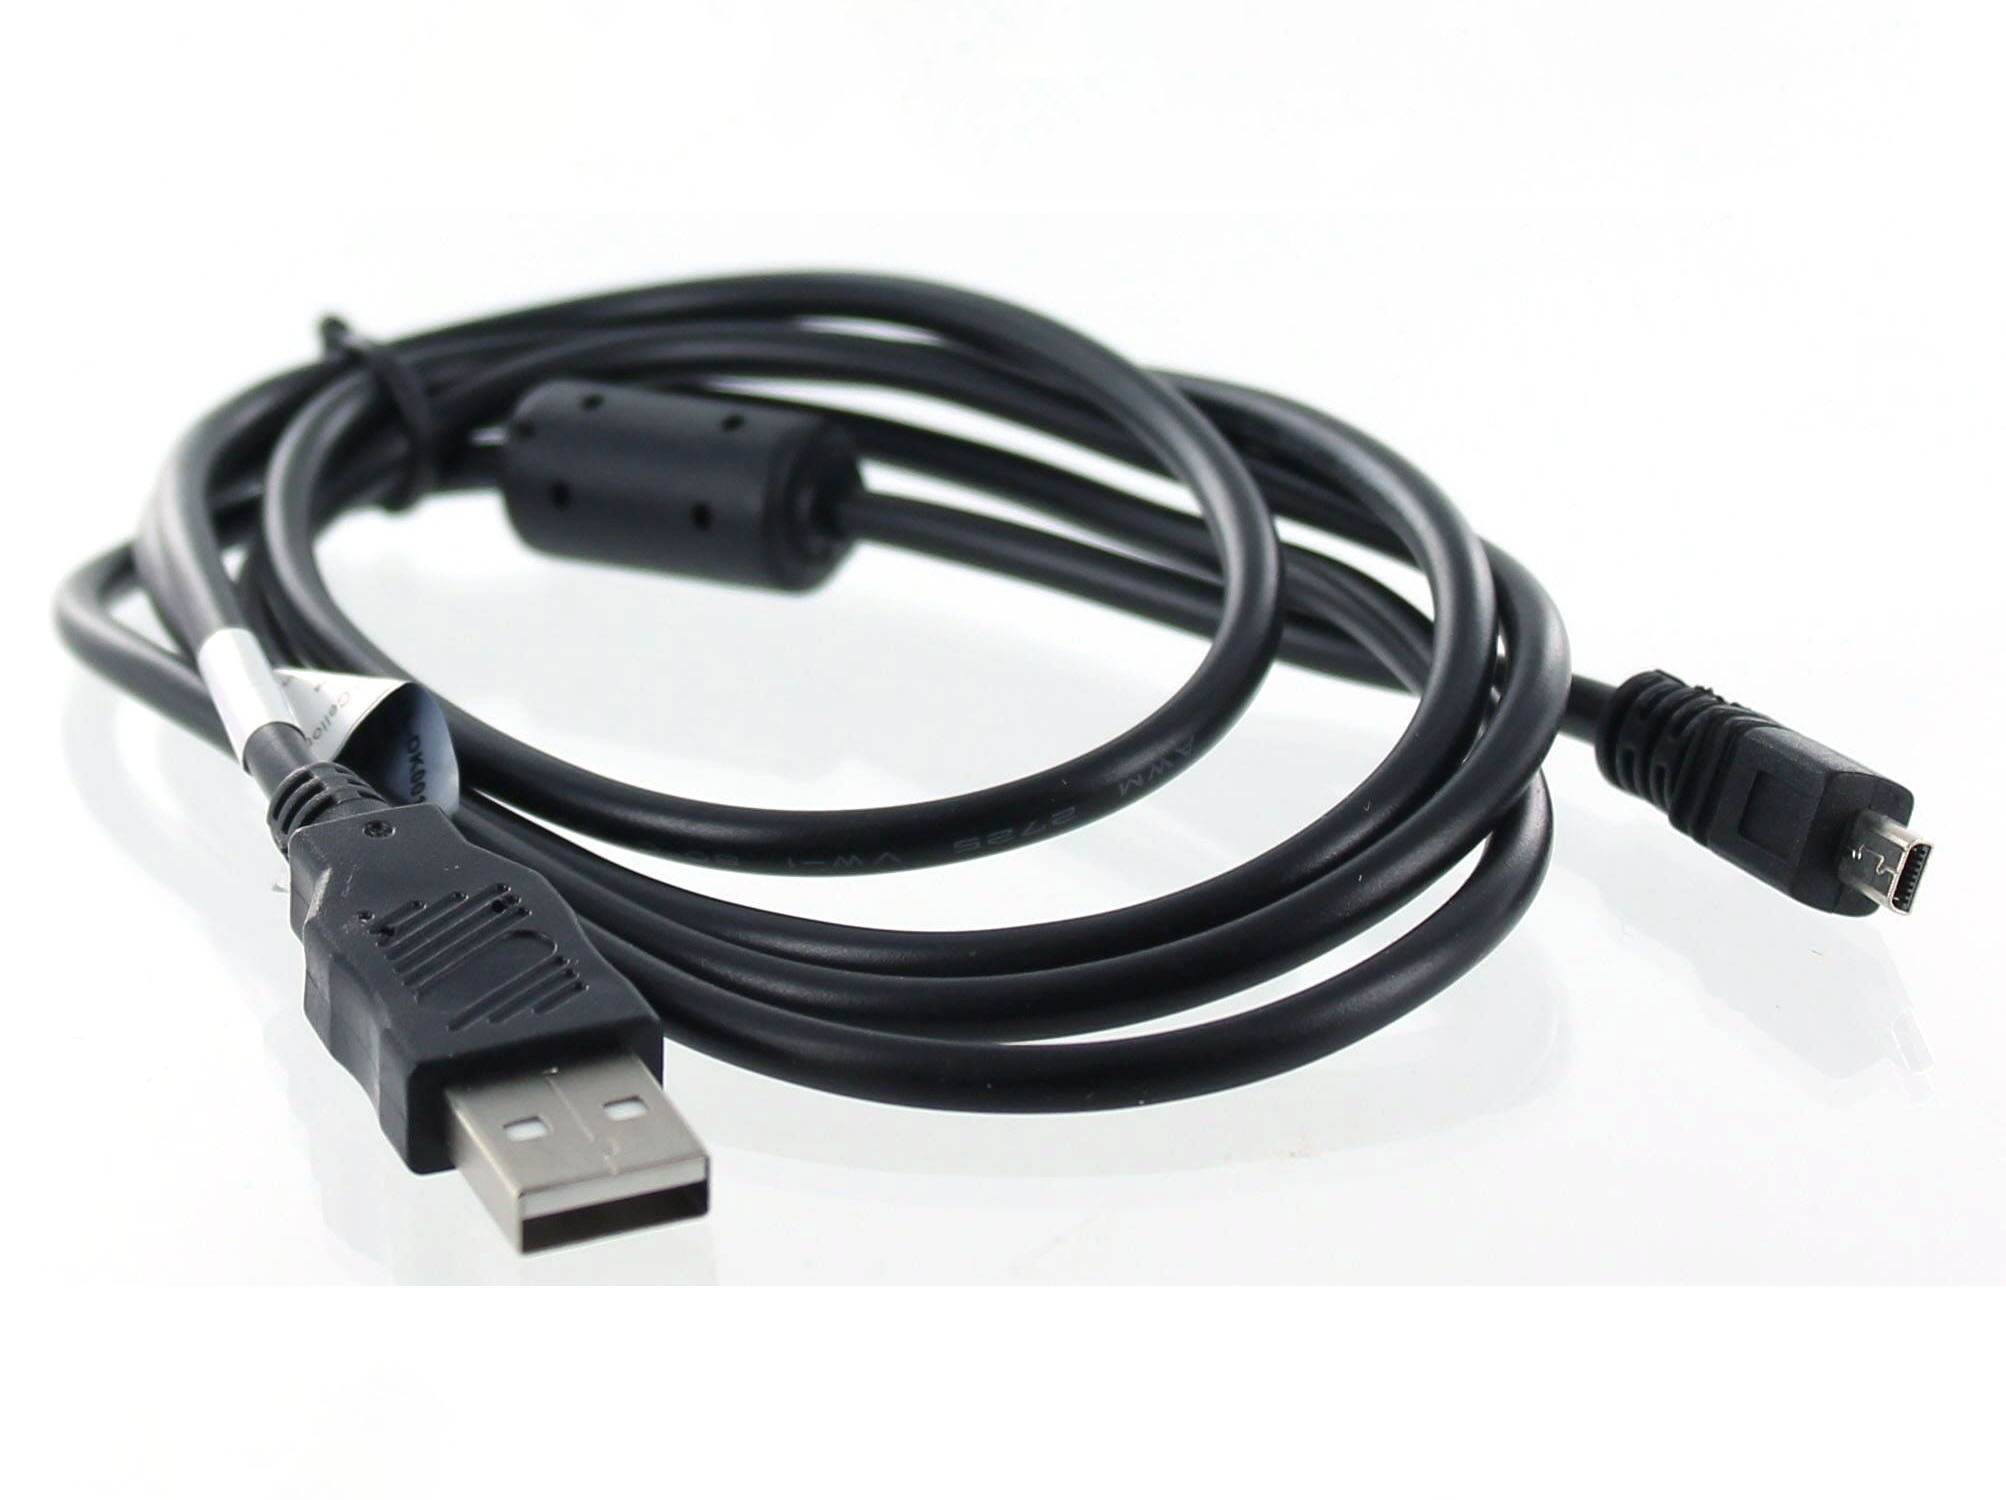 MOBILOTEC USB-Datenkabel kompatibel mit Olympus Olympus, X-790 schwarz Zubehör